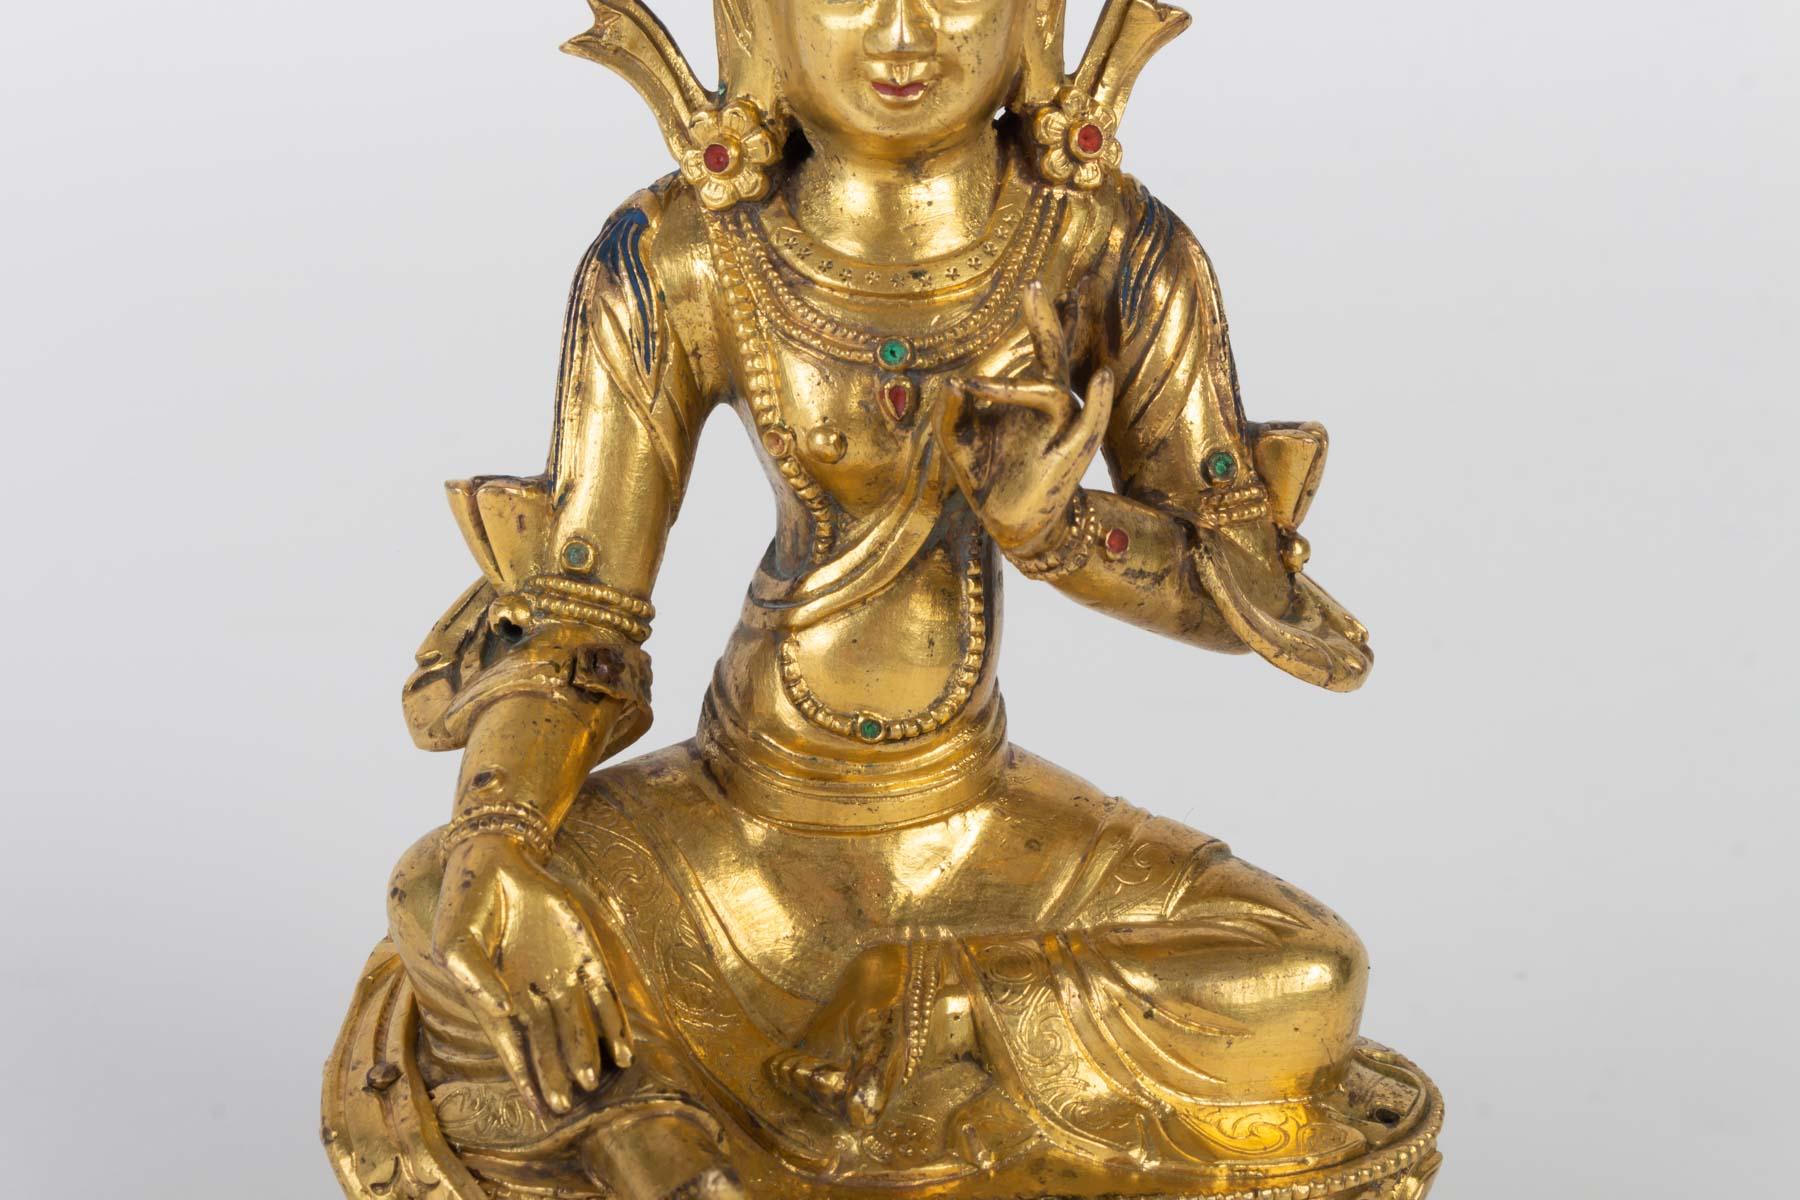 Chinese Golden Bronze Buddha, China, 17th-18th Century